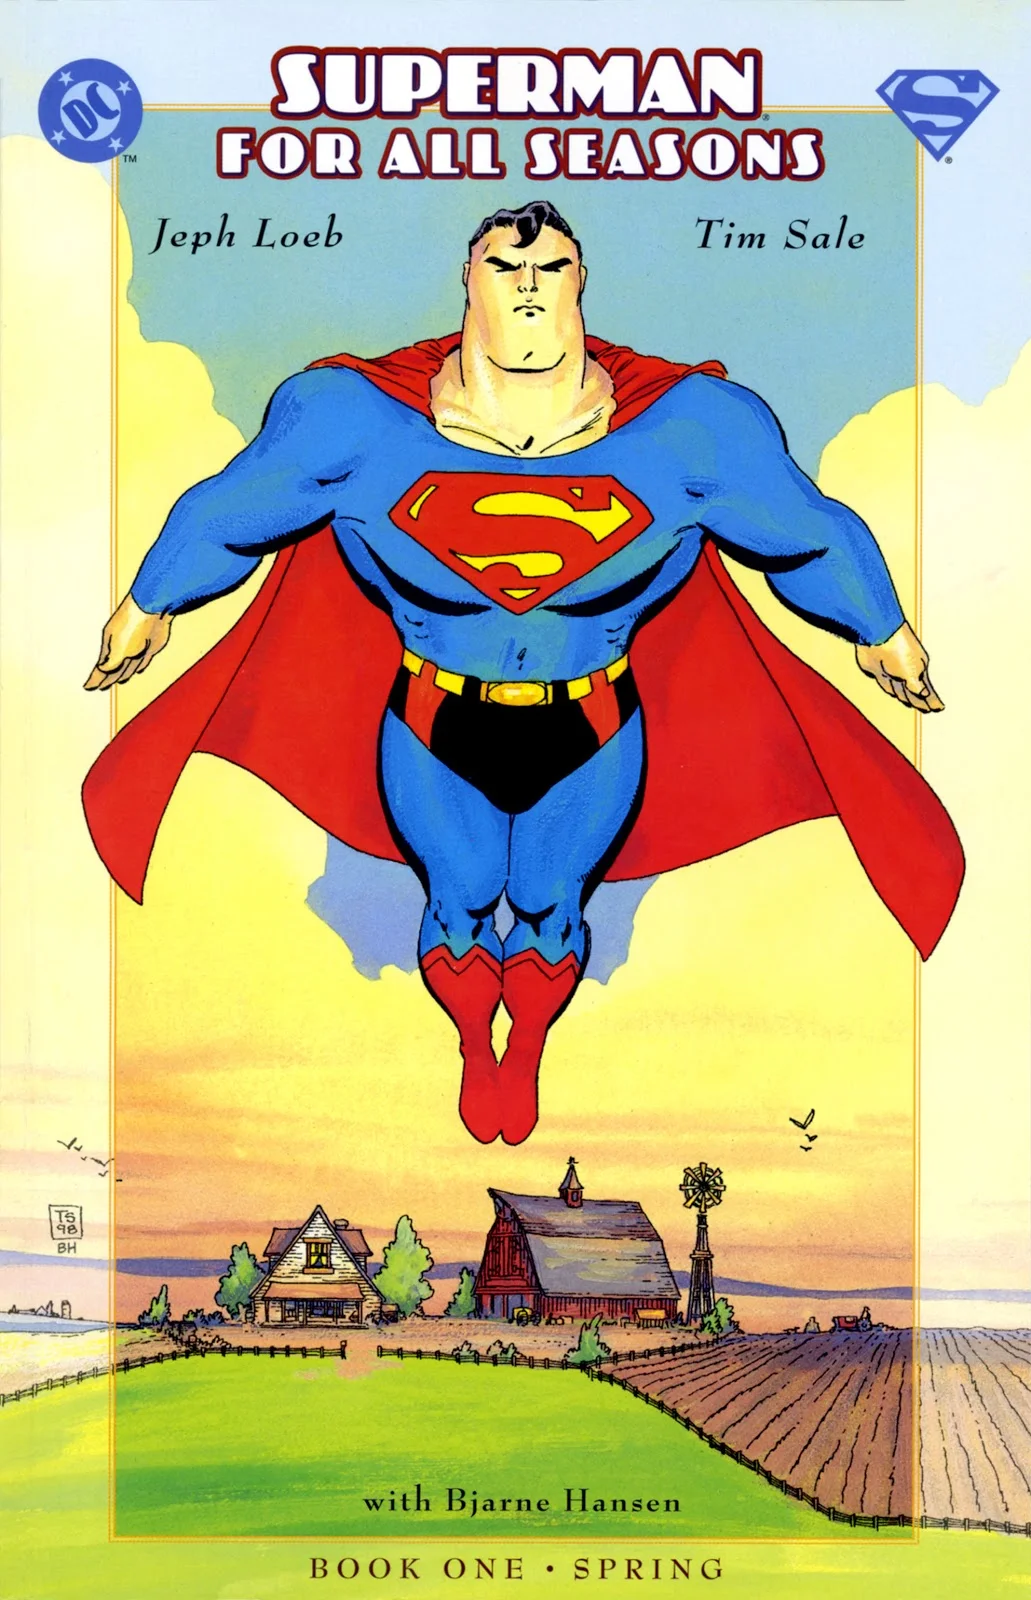 История Супермена и эволюция его образа в комиксах - фото 32